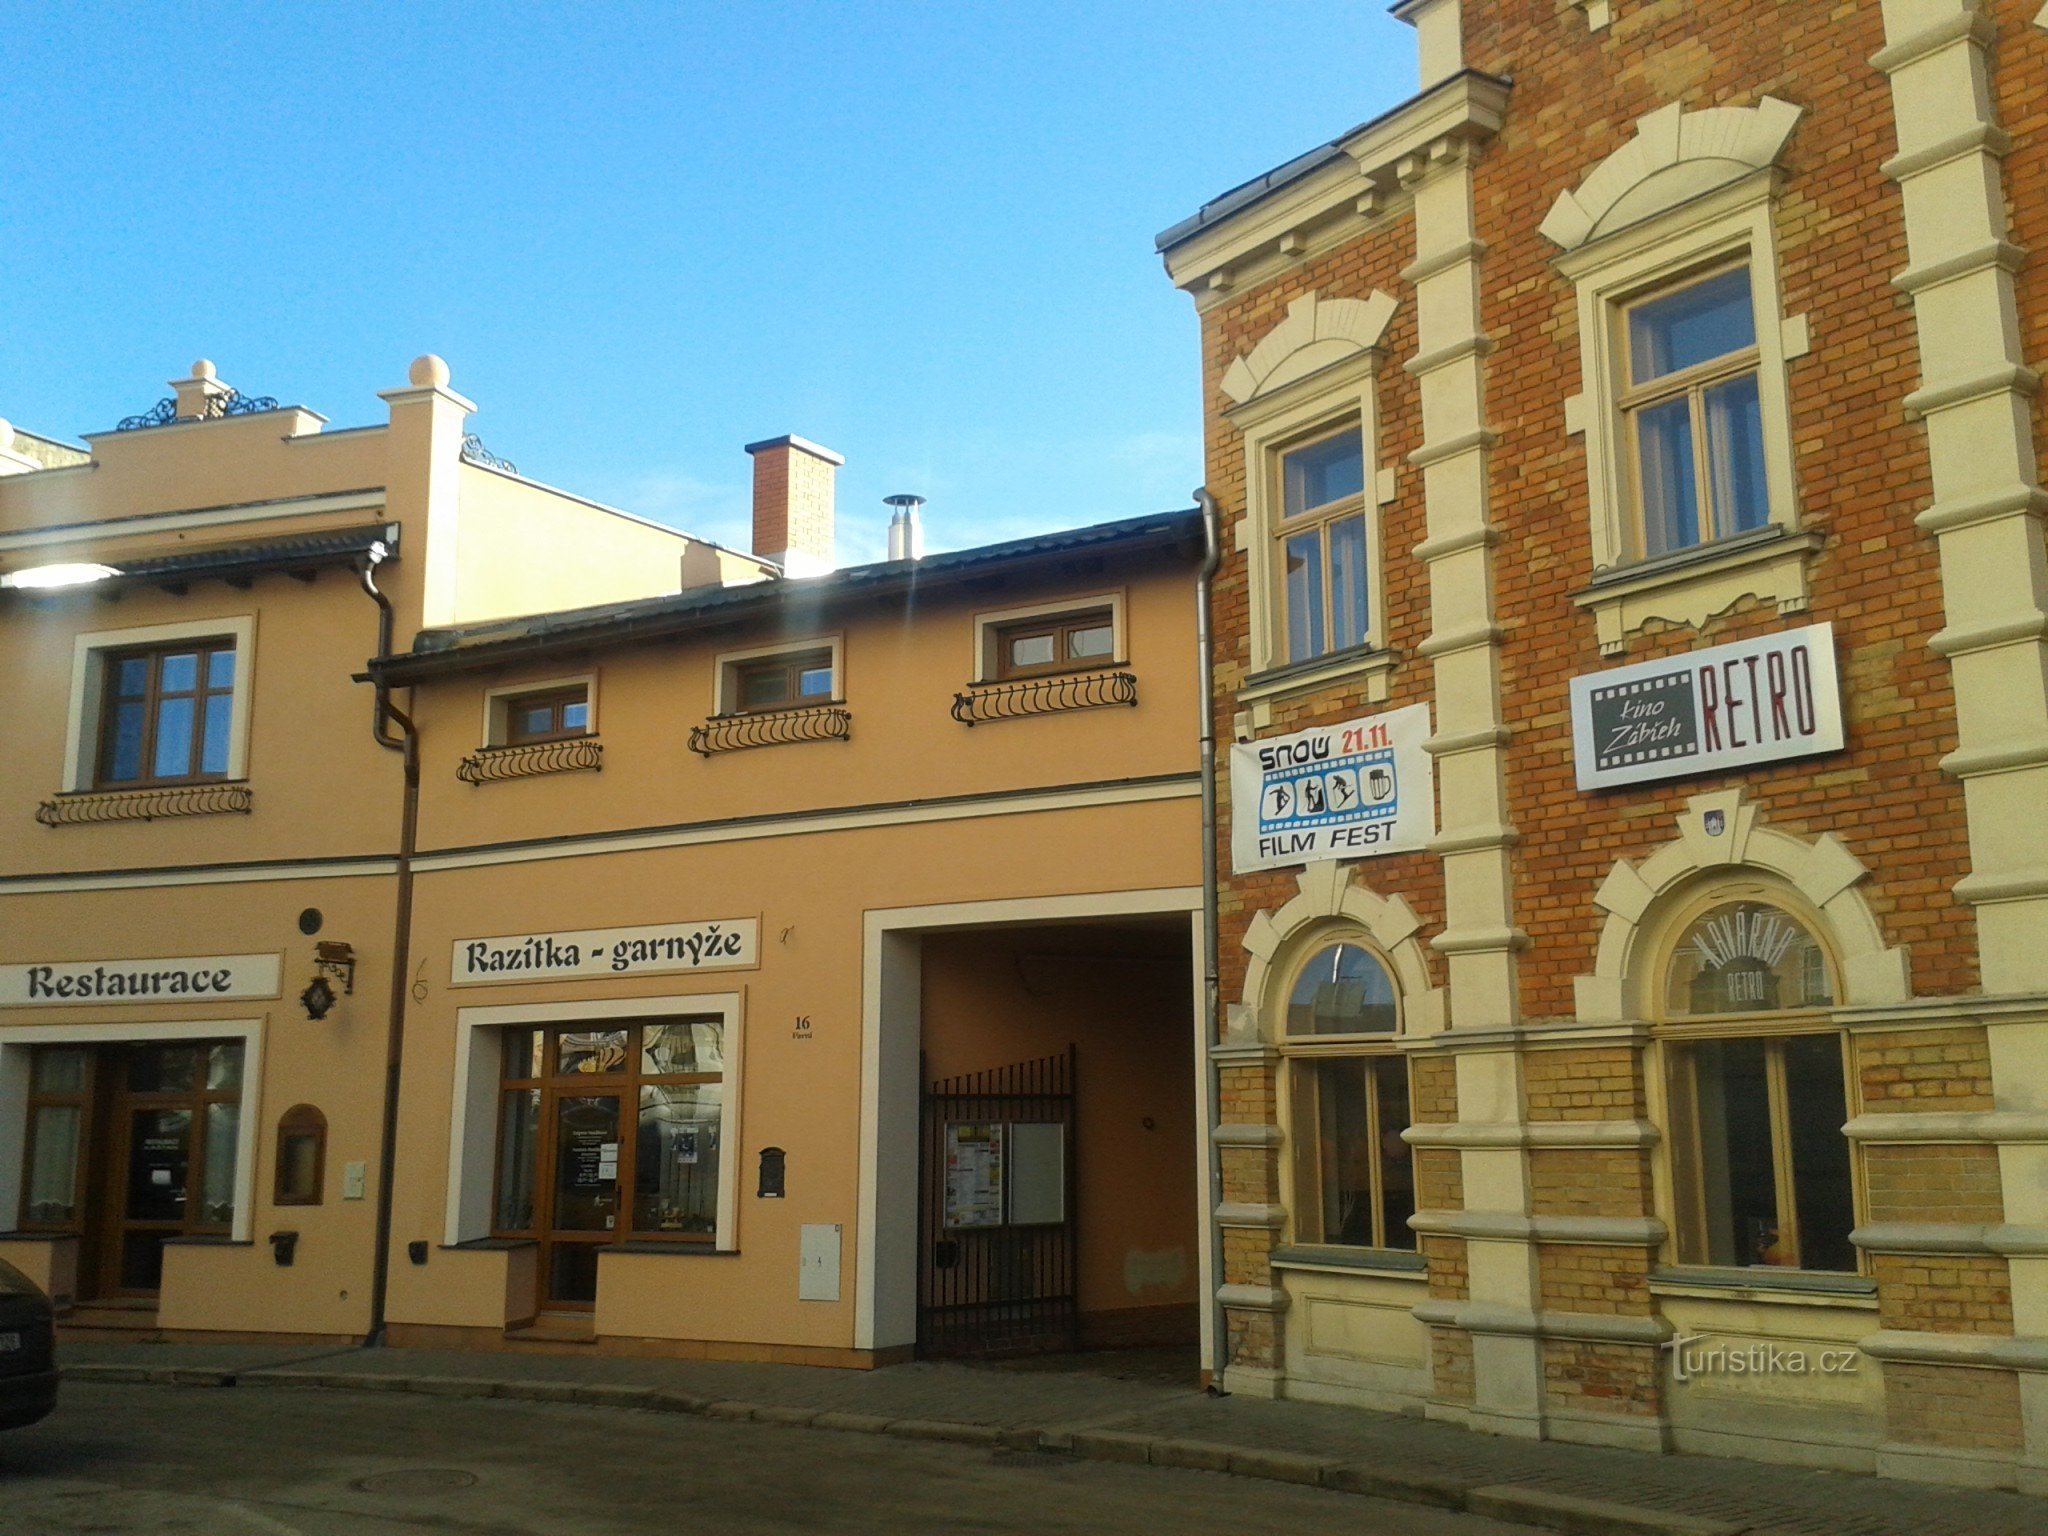 Zábřeh - Tòa nhà rạp chiếu phim cổ điển với quán cà phê